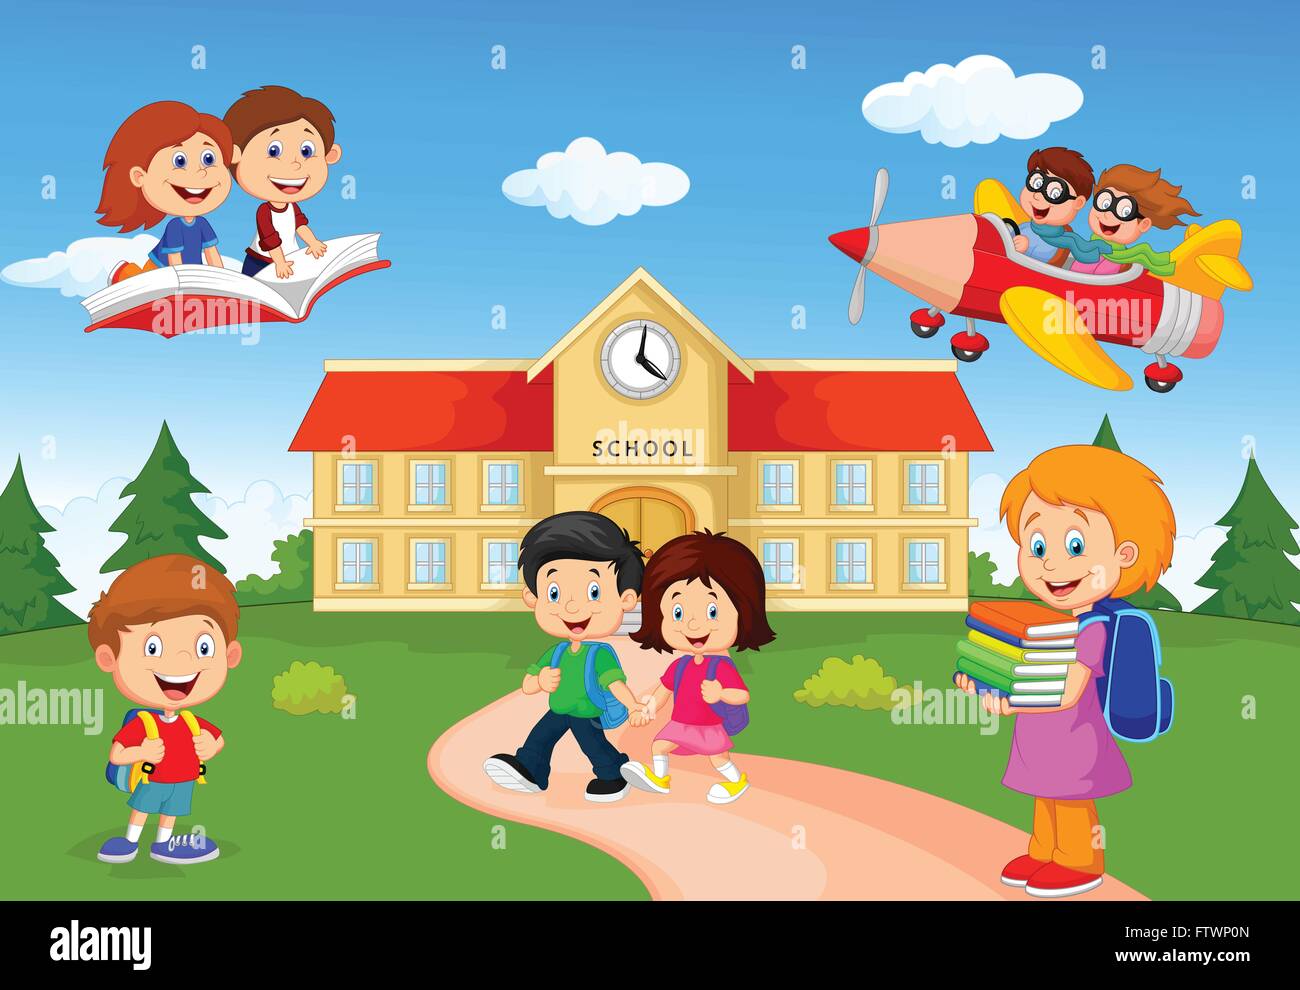 Happy cartoon school children Stock Vector Image & Art - Alamy